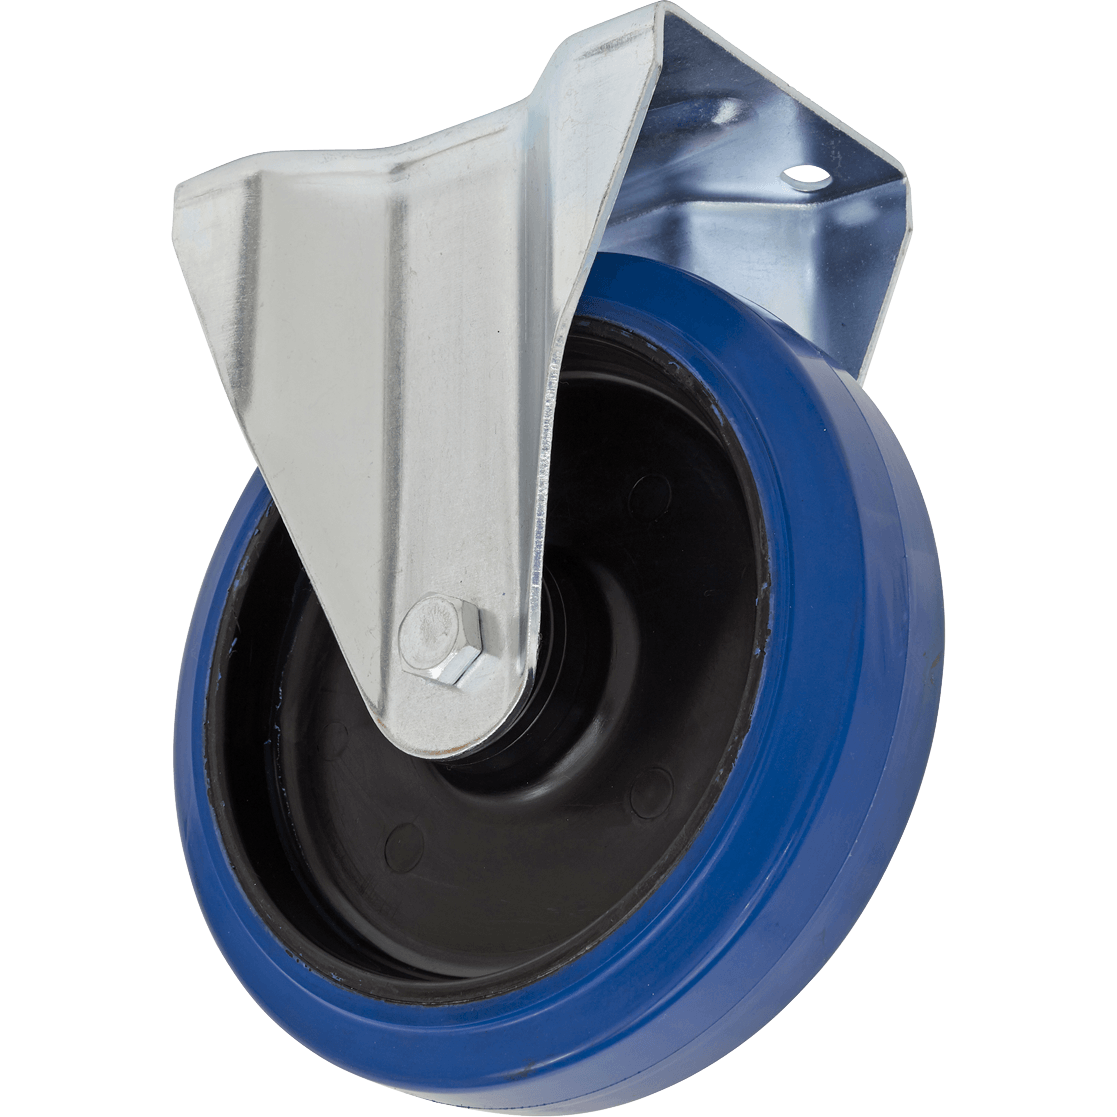 Sealey Heavy-Duty Blue Elastic Rubber Fixed Castor Wheel 160mm